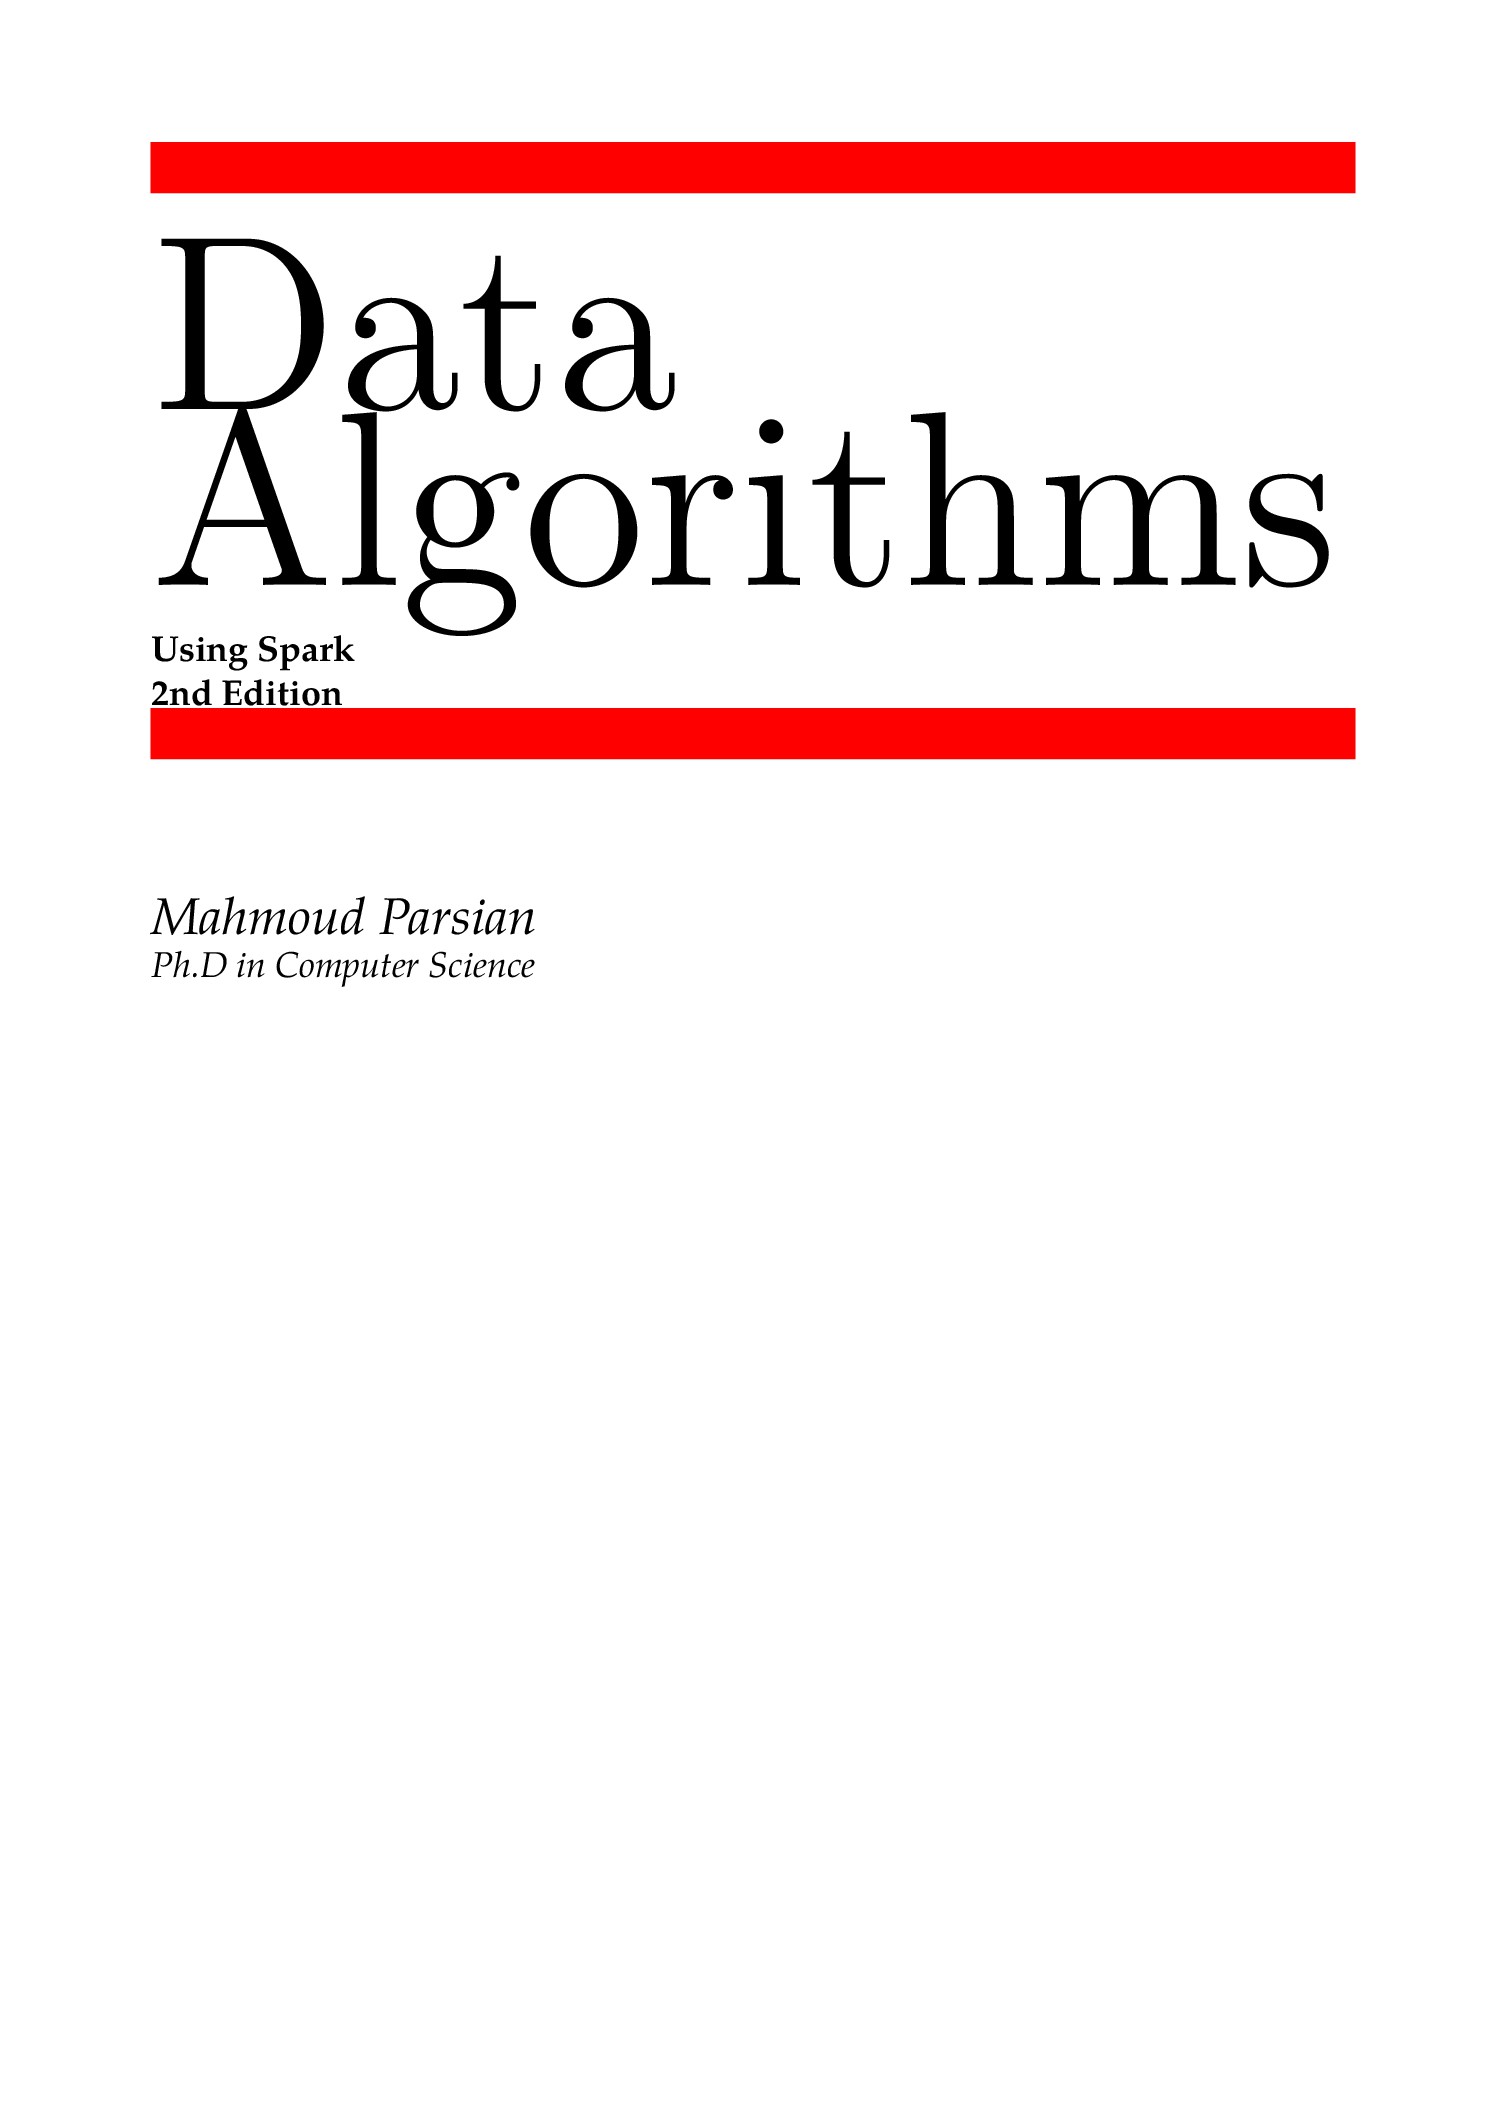 data-algorithms-2nd-ed-cover.jpg